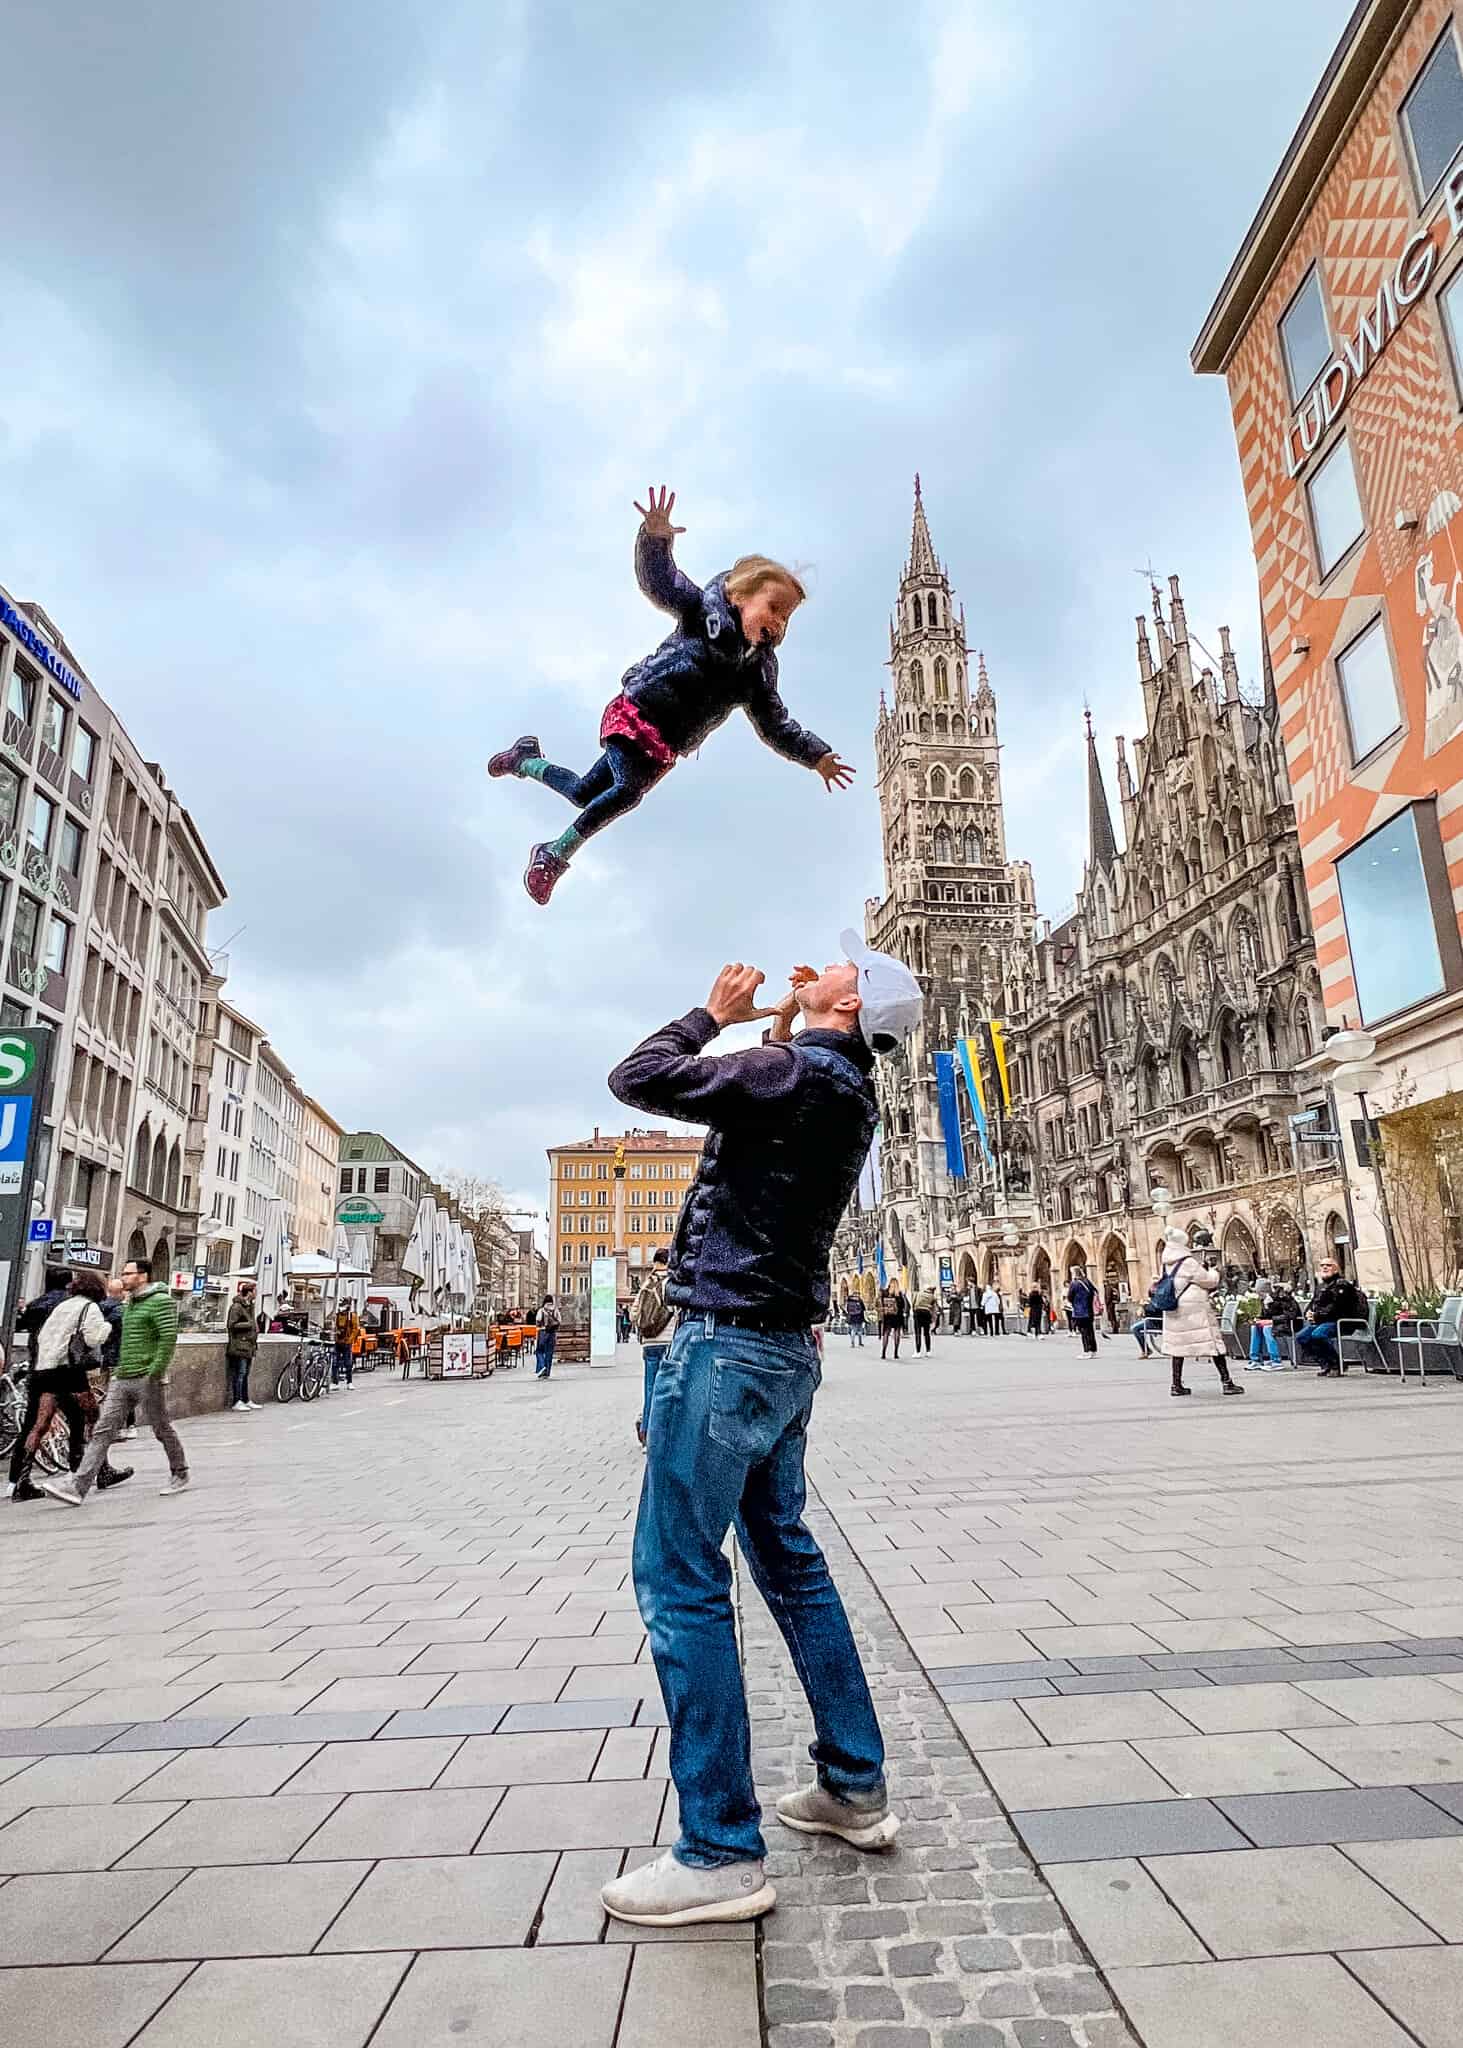 dad throwing daughter in air Marienplatz - Munich with kids